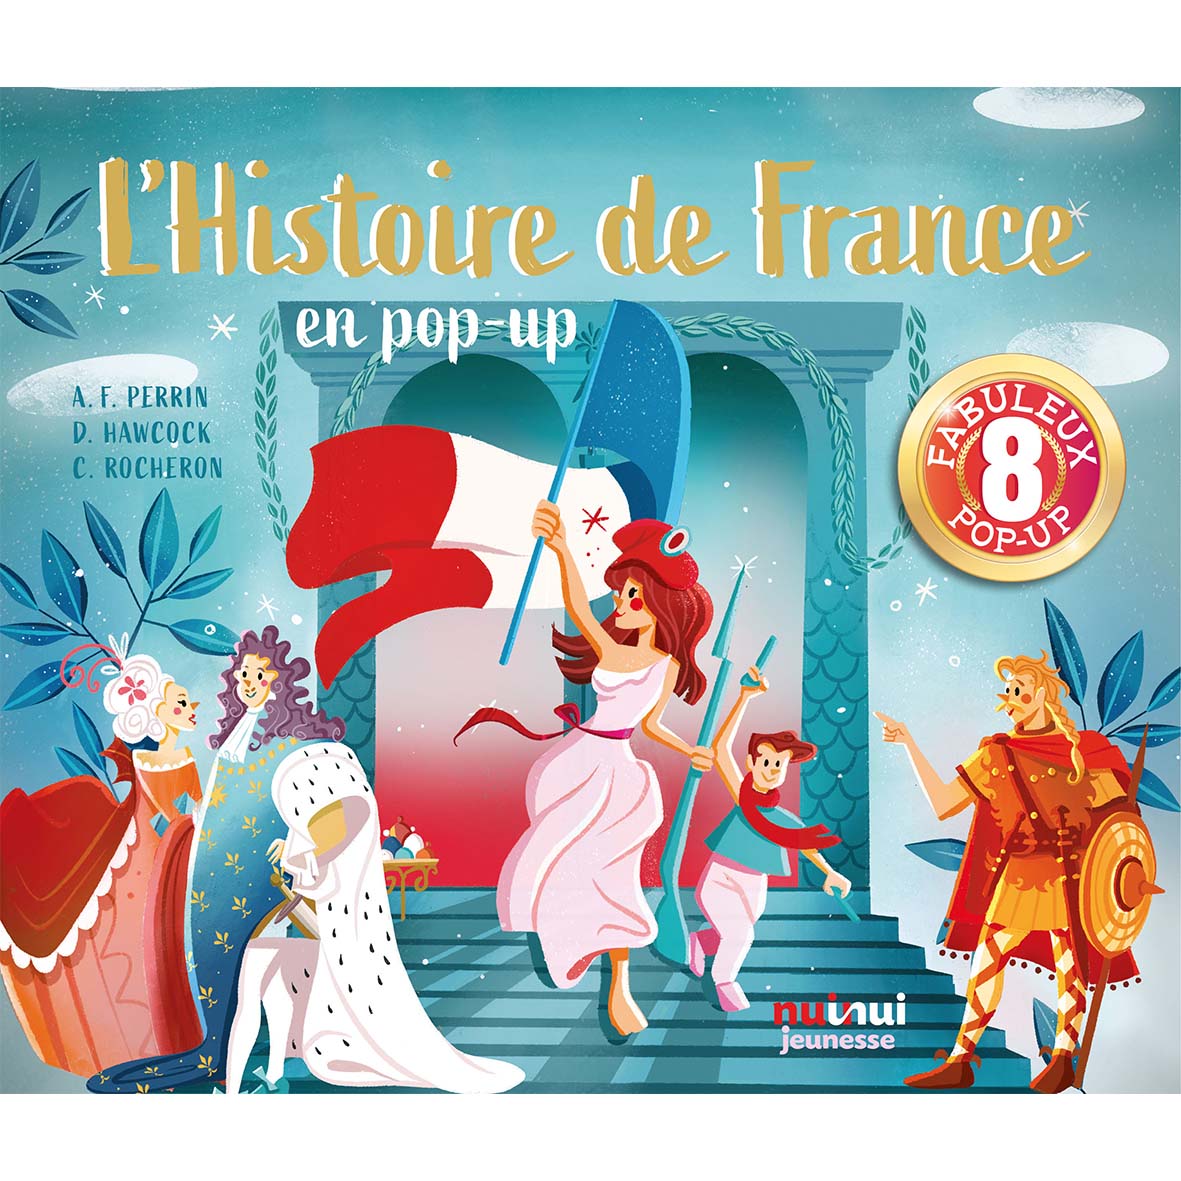 Pop-up historique - L’Histoire de France en pop-up